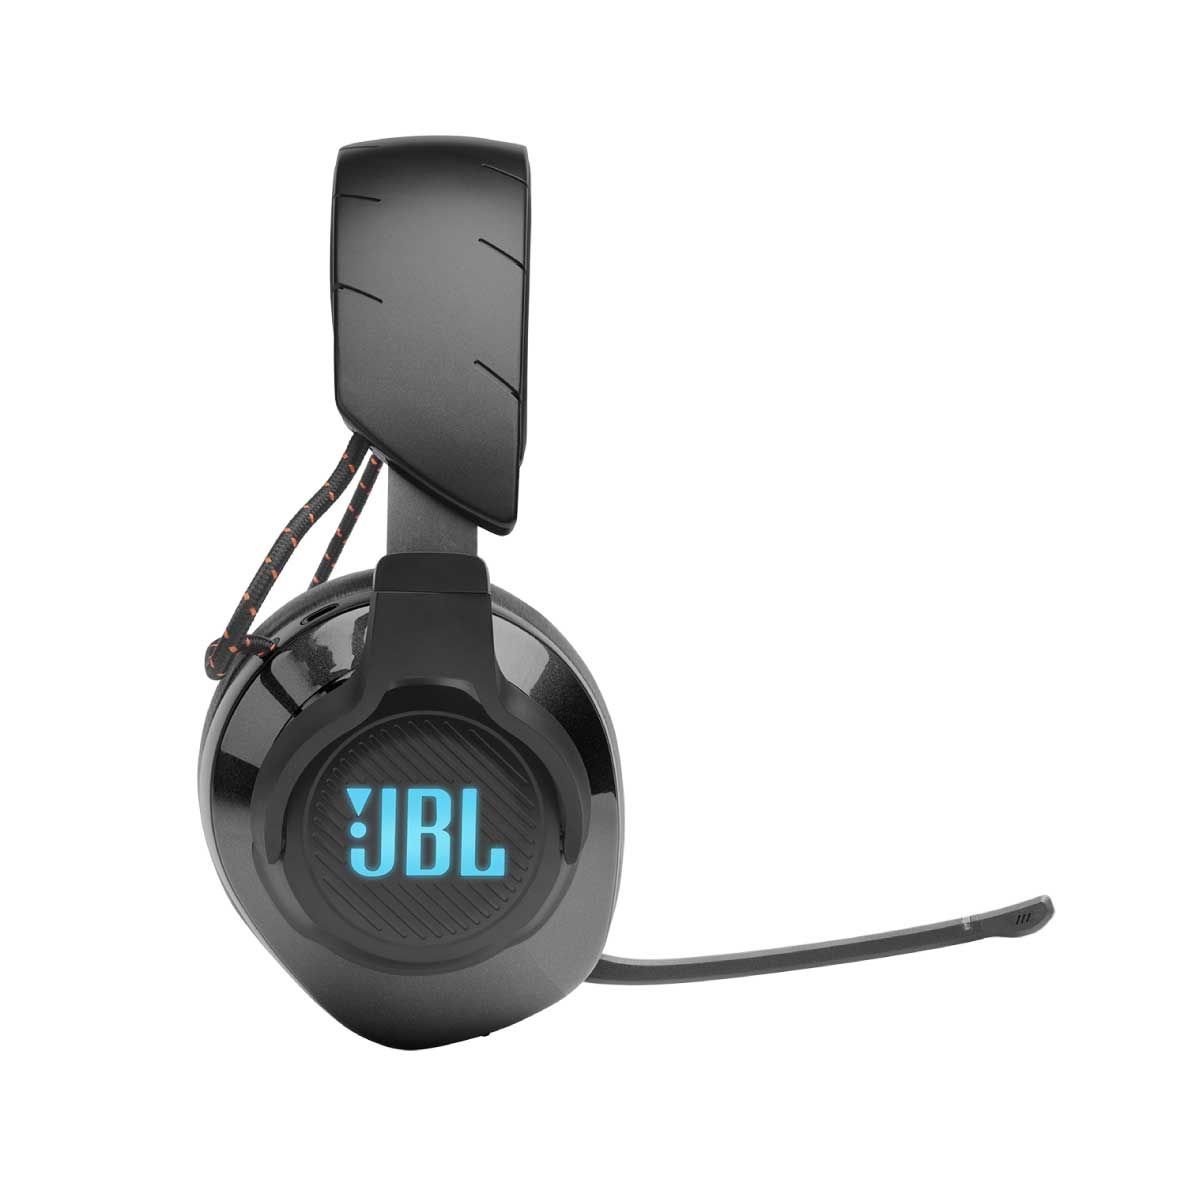 หูฟังเกมมิ่ง JBL Quantum รุ่น QUANTM610BK BLACK สีดำ